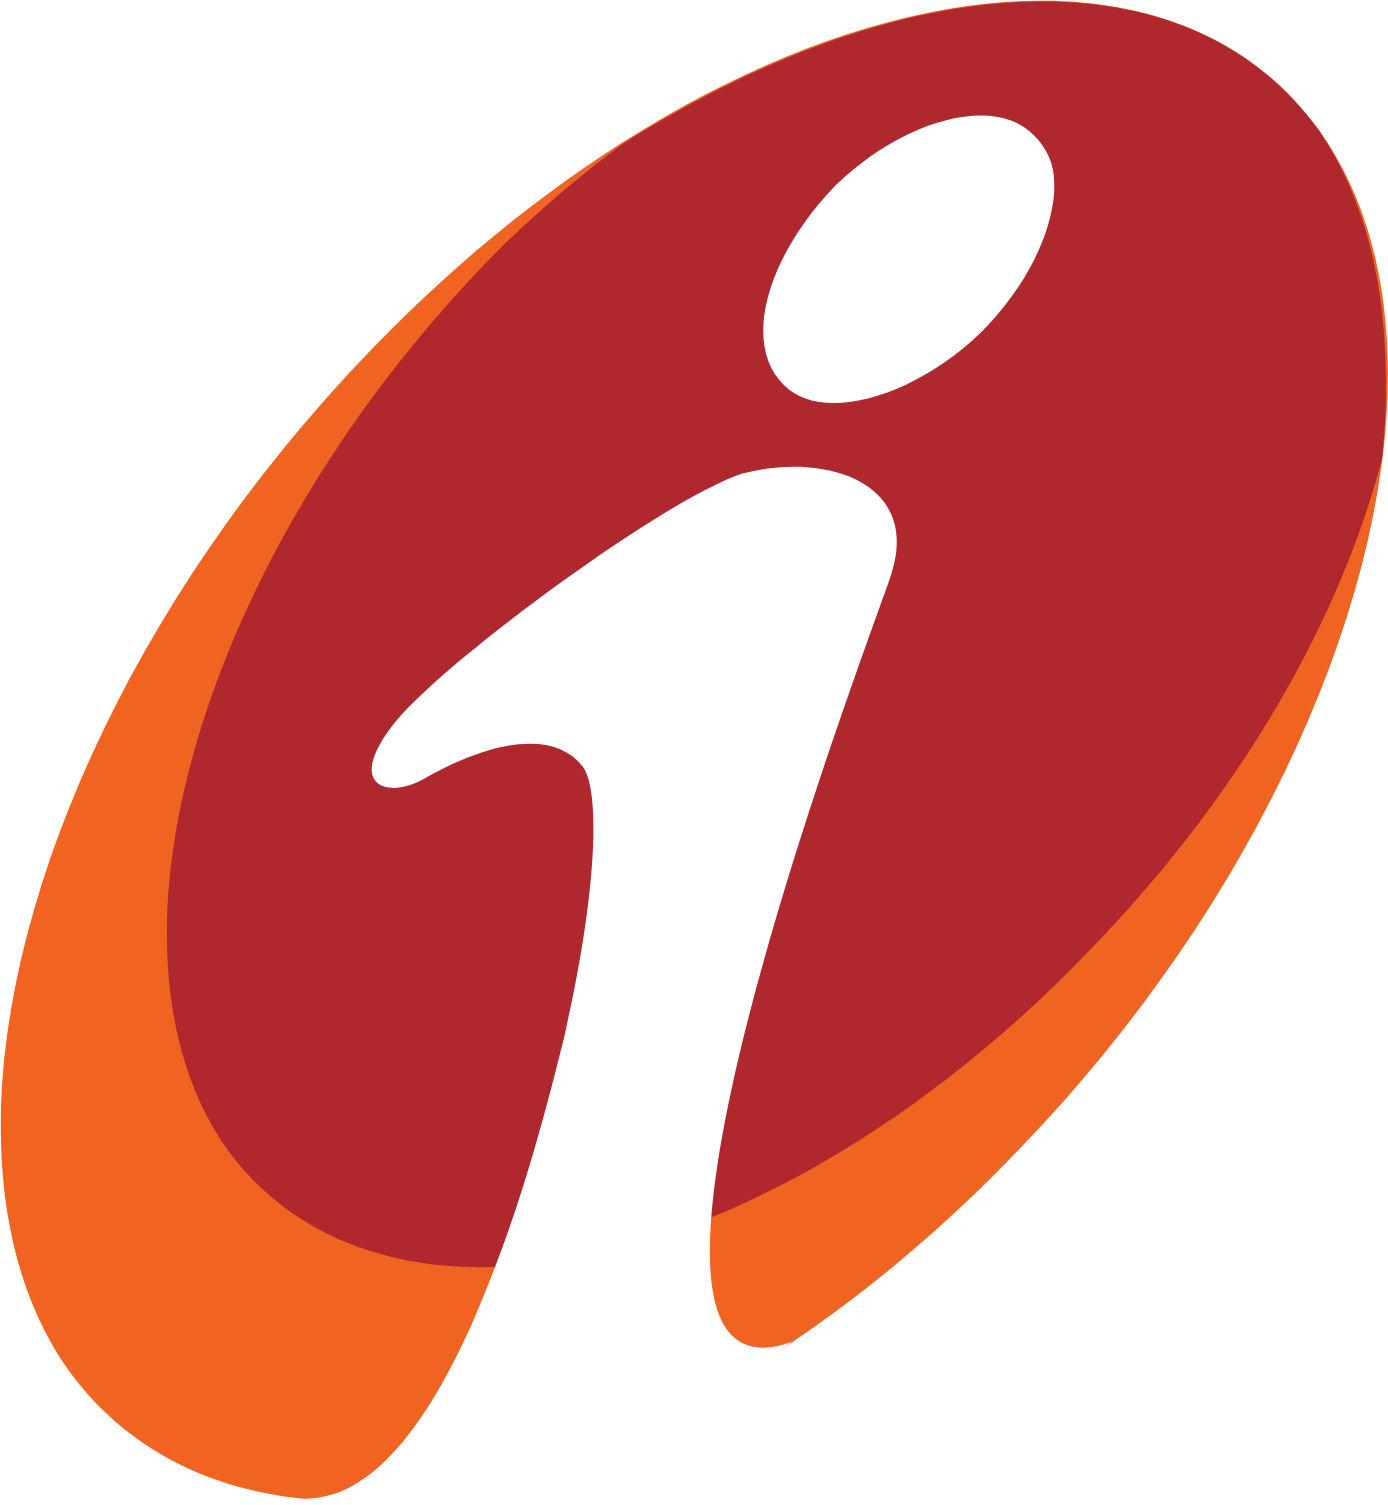 ICICI Bank logo (PNG transparent)